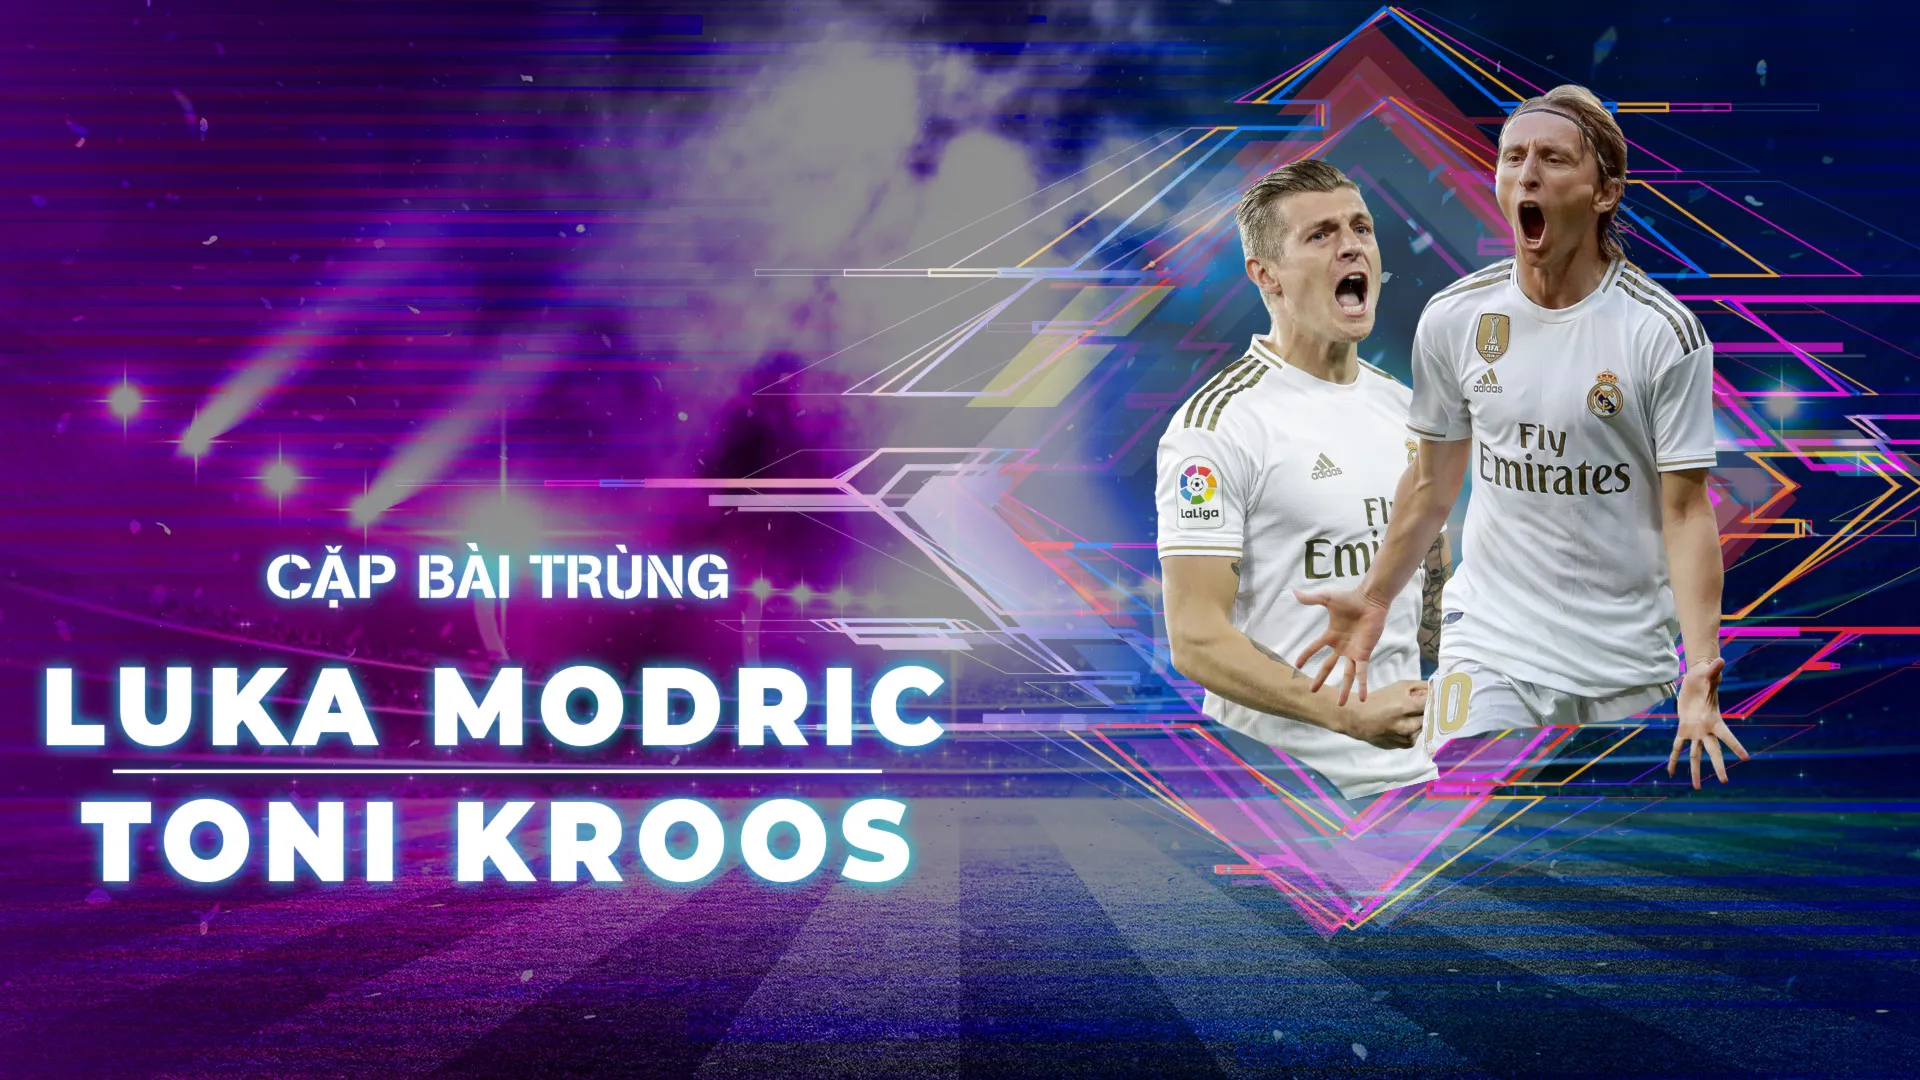 Luka Modric - Toni Kroos | Cặp Bài Trùng